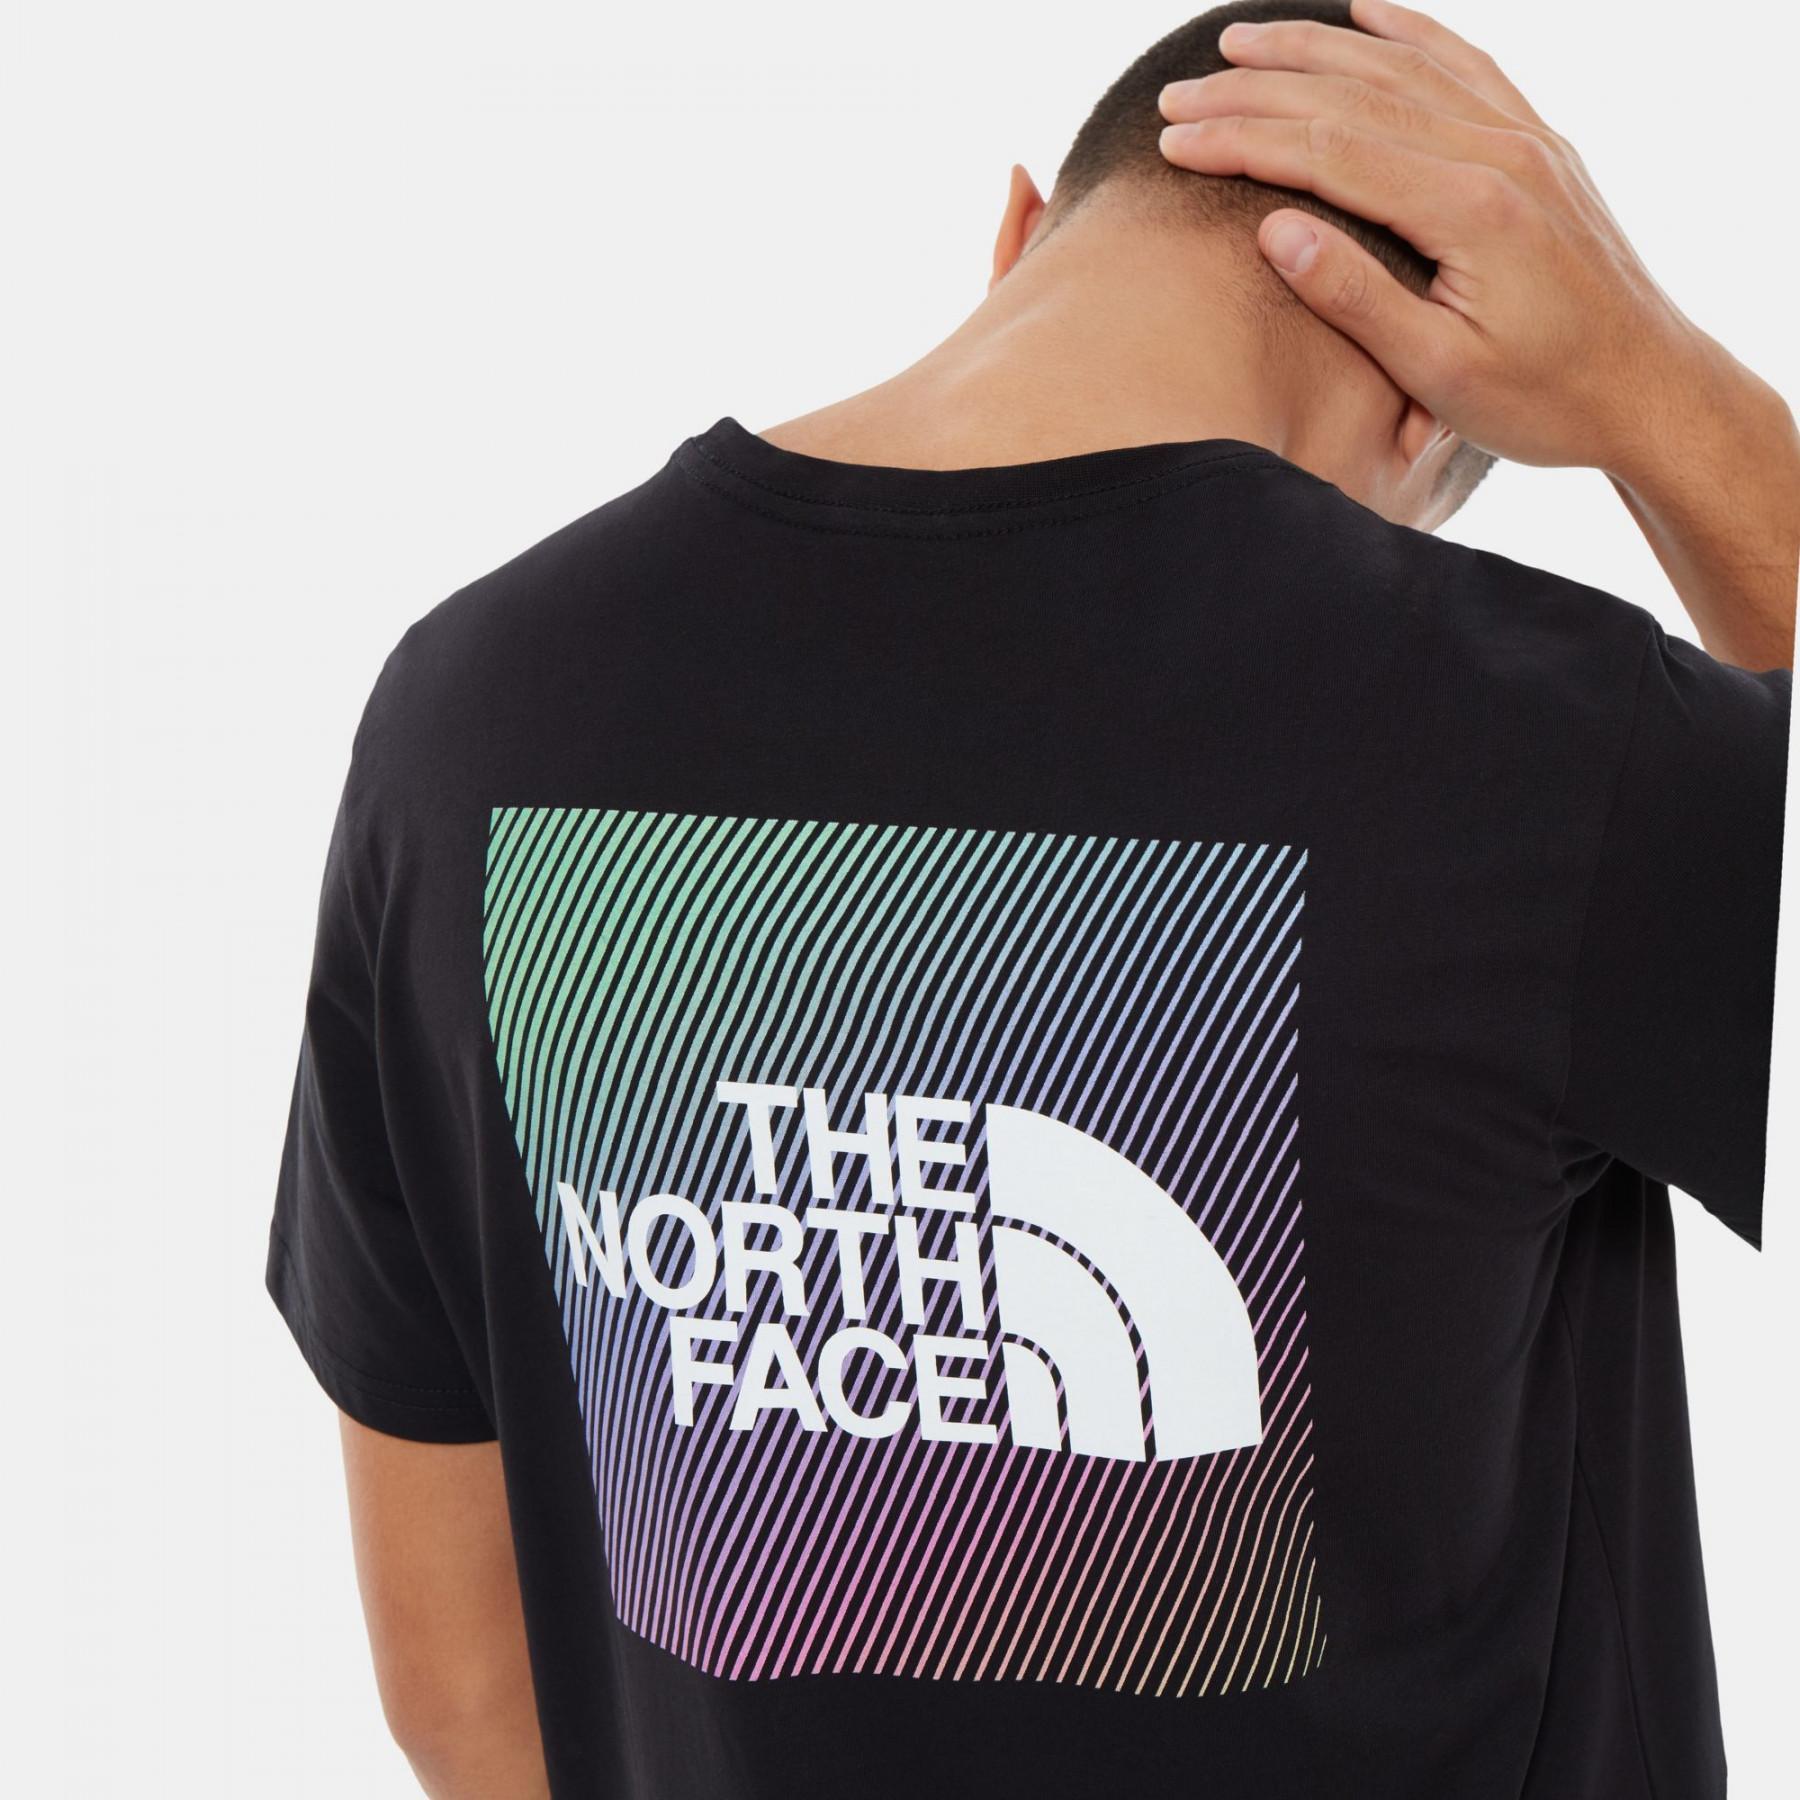 Koszulka The North Face Rainbow